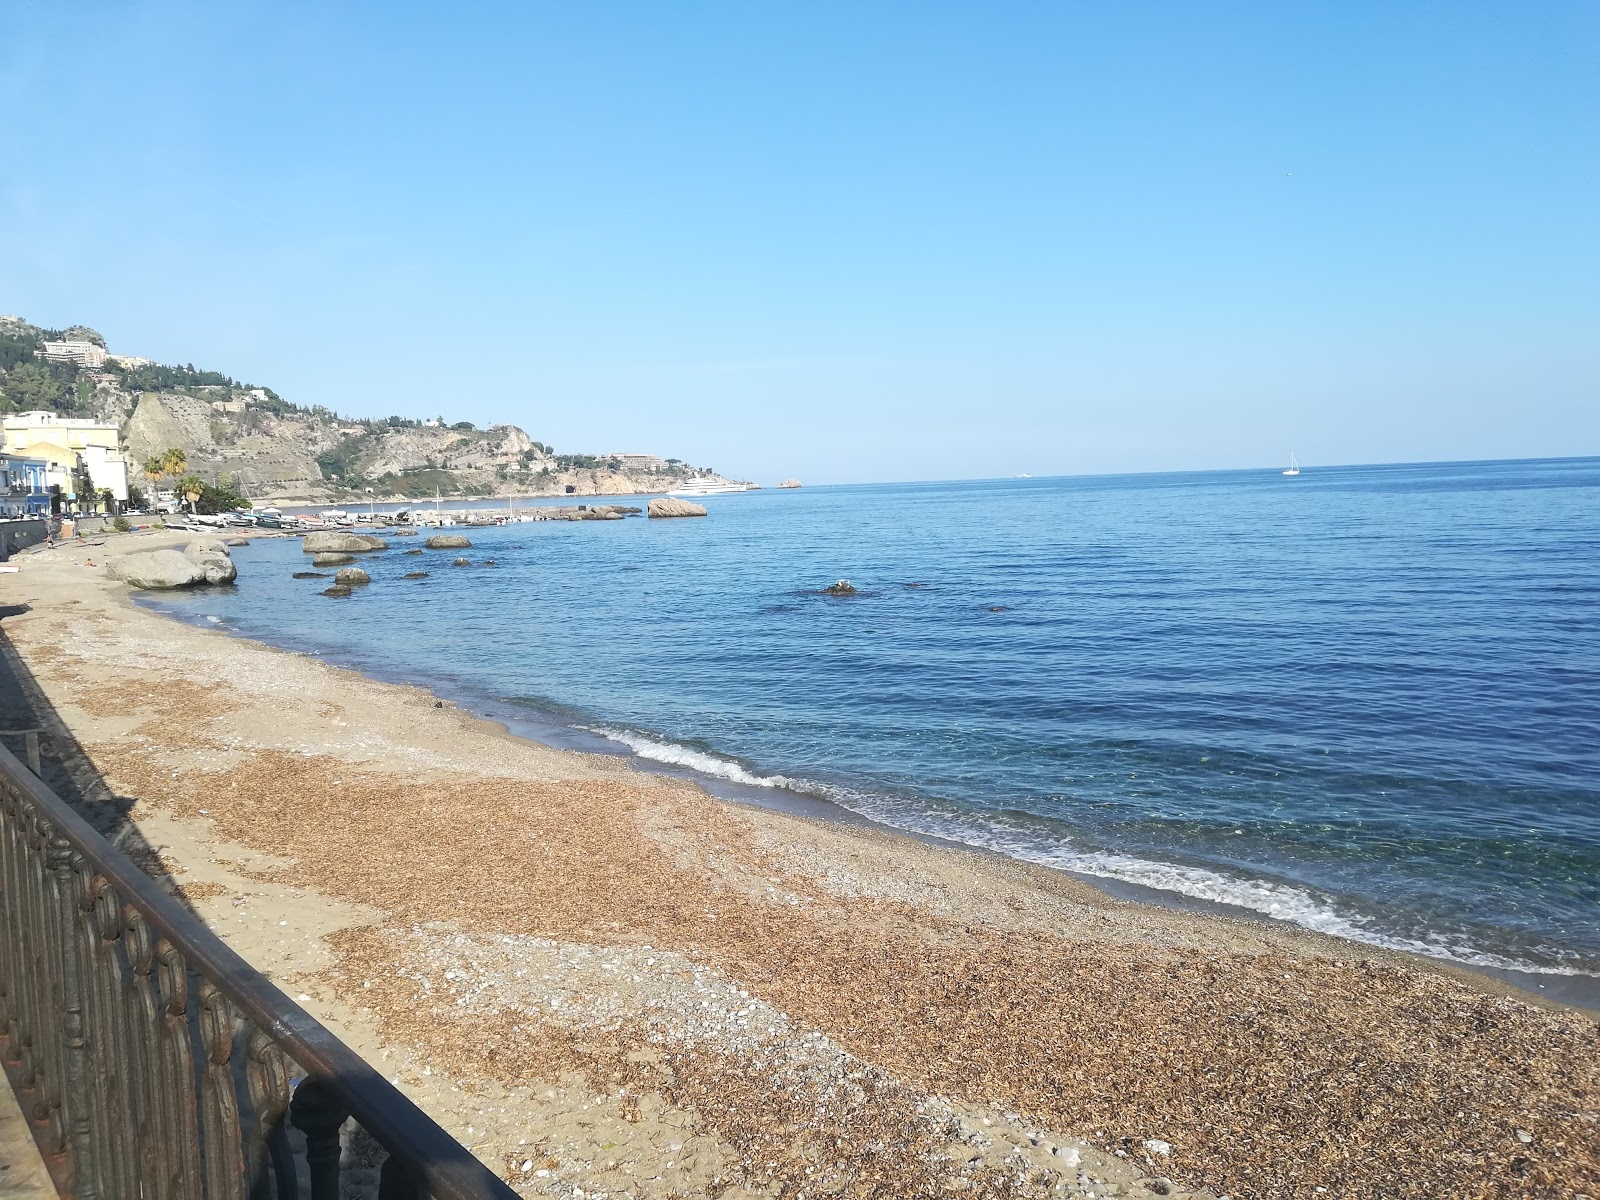 Foto van Spiaggia Giardini Naxos met gemiddeld niveau van netheid